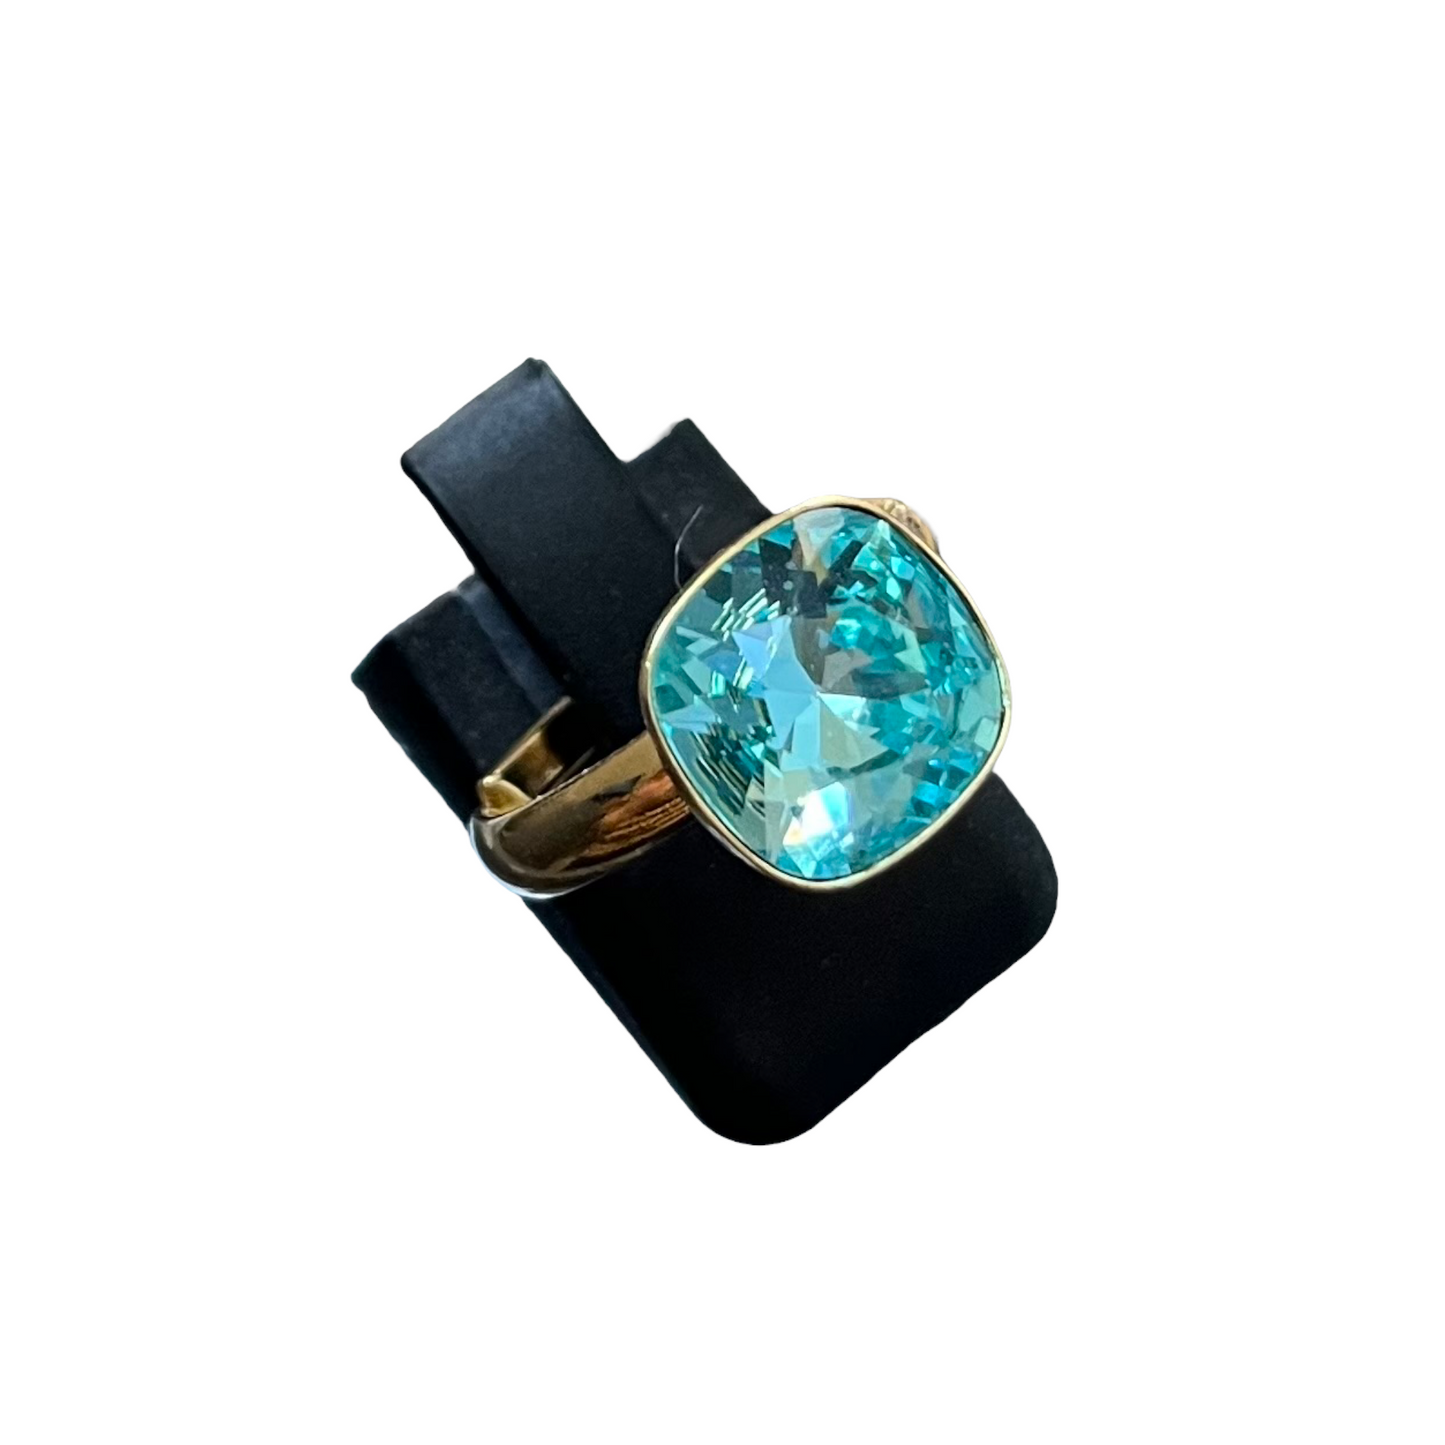 Bague avec cristaux Swarovski, collection KIM, bleu turquoise, argent doré